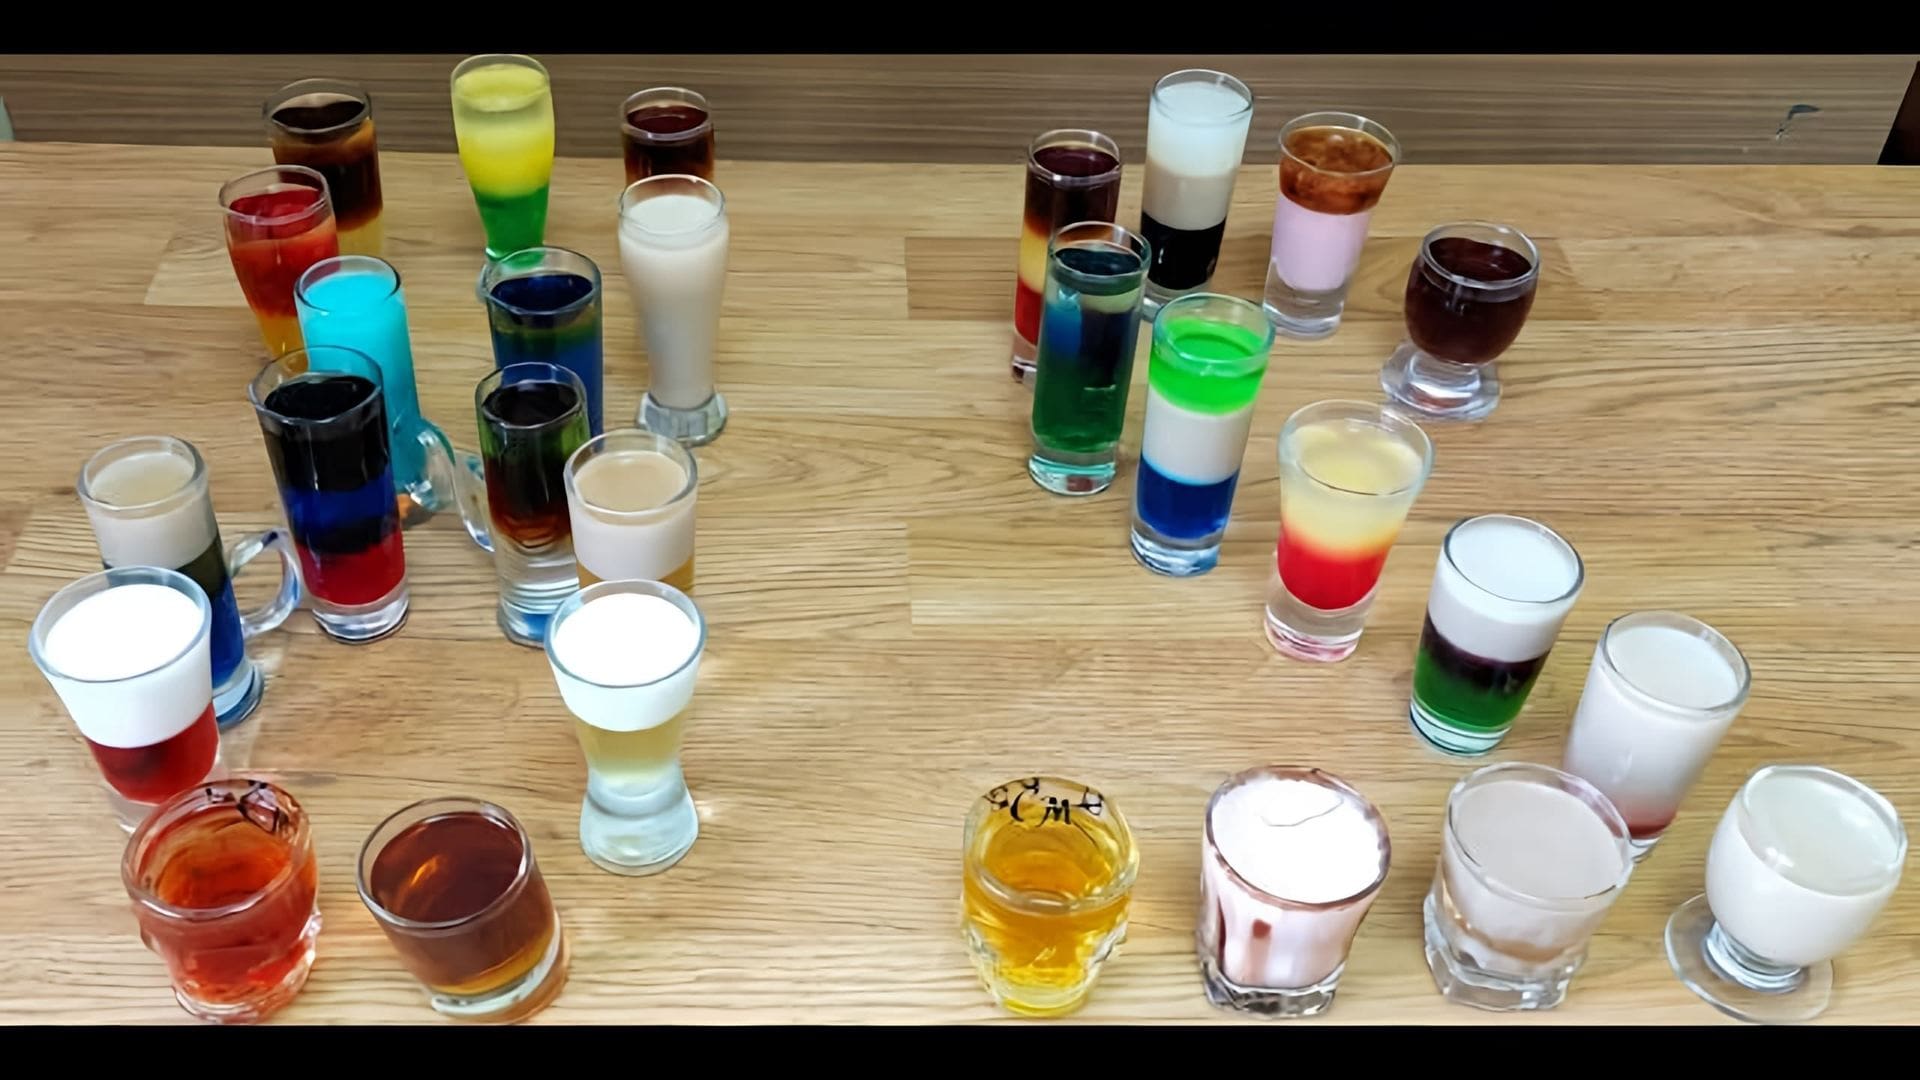 В данном видео демонстрируются различные коктейли, которые можно приготовить с использованием ликеров, водки, рома и текилы